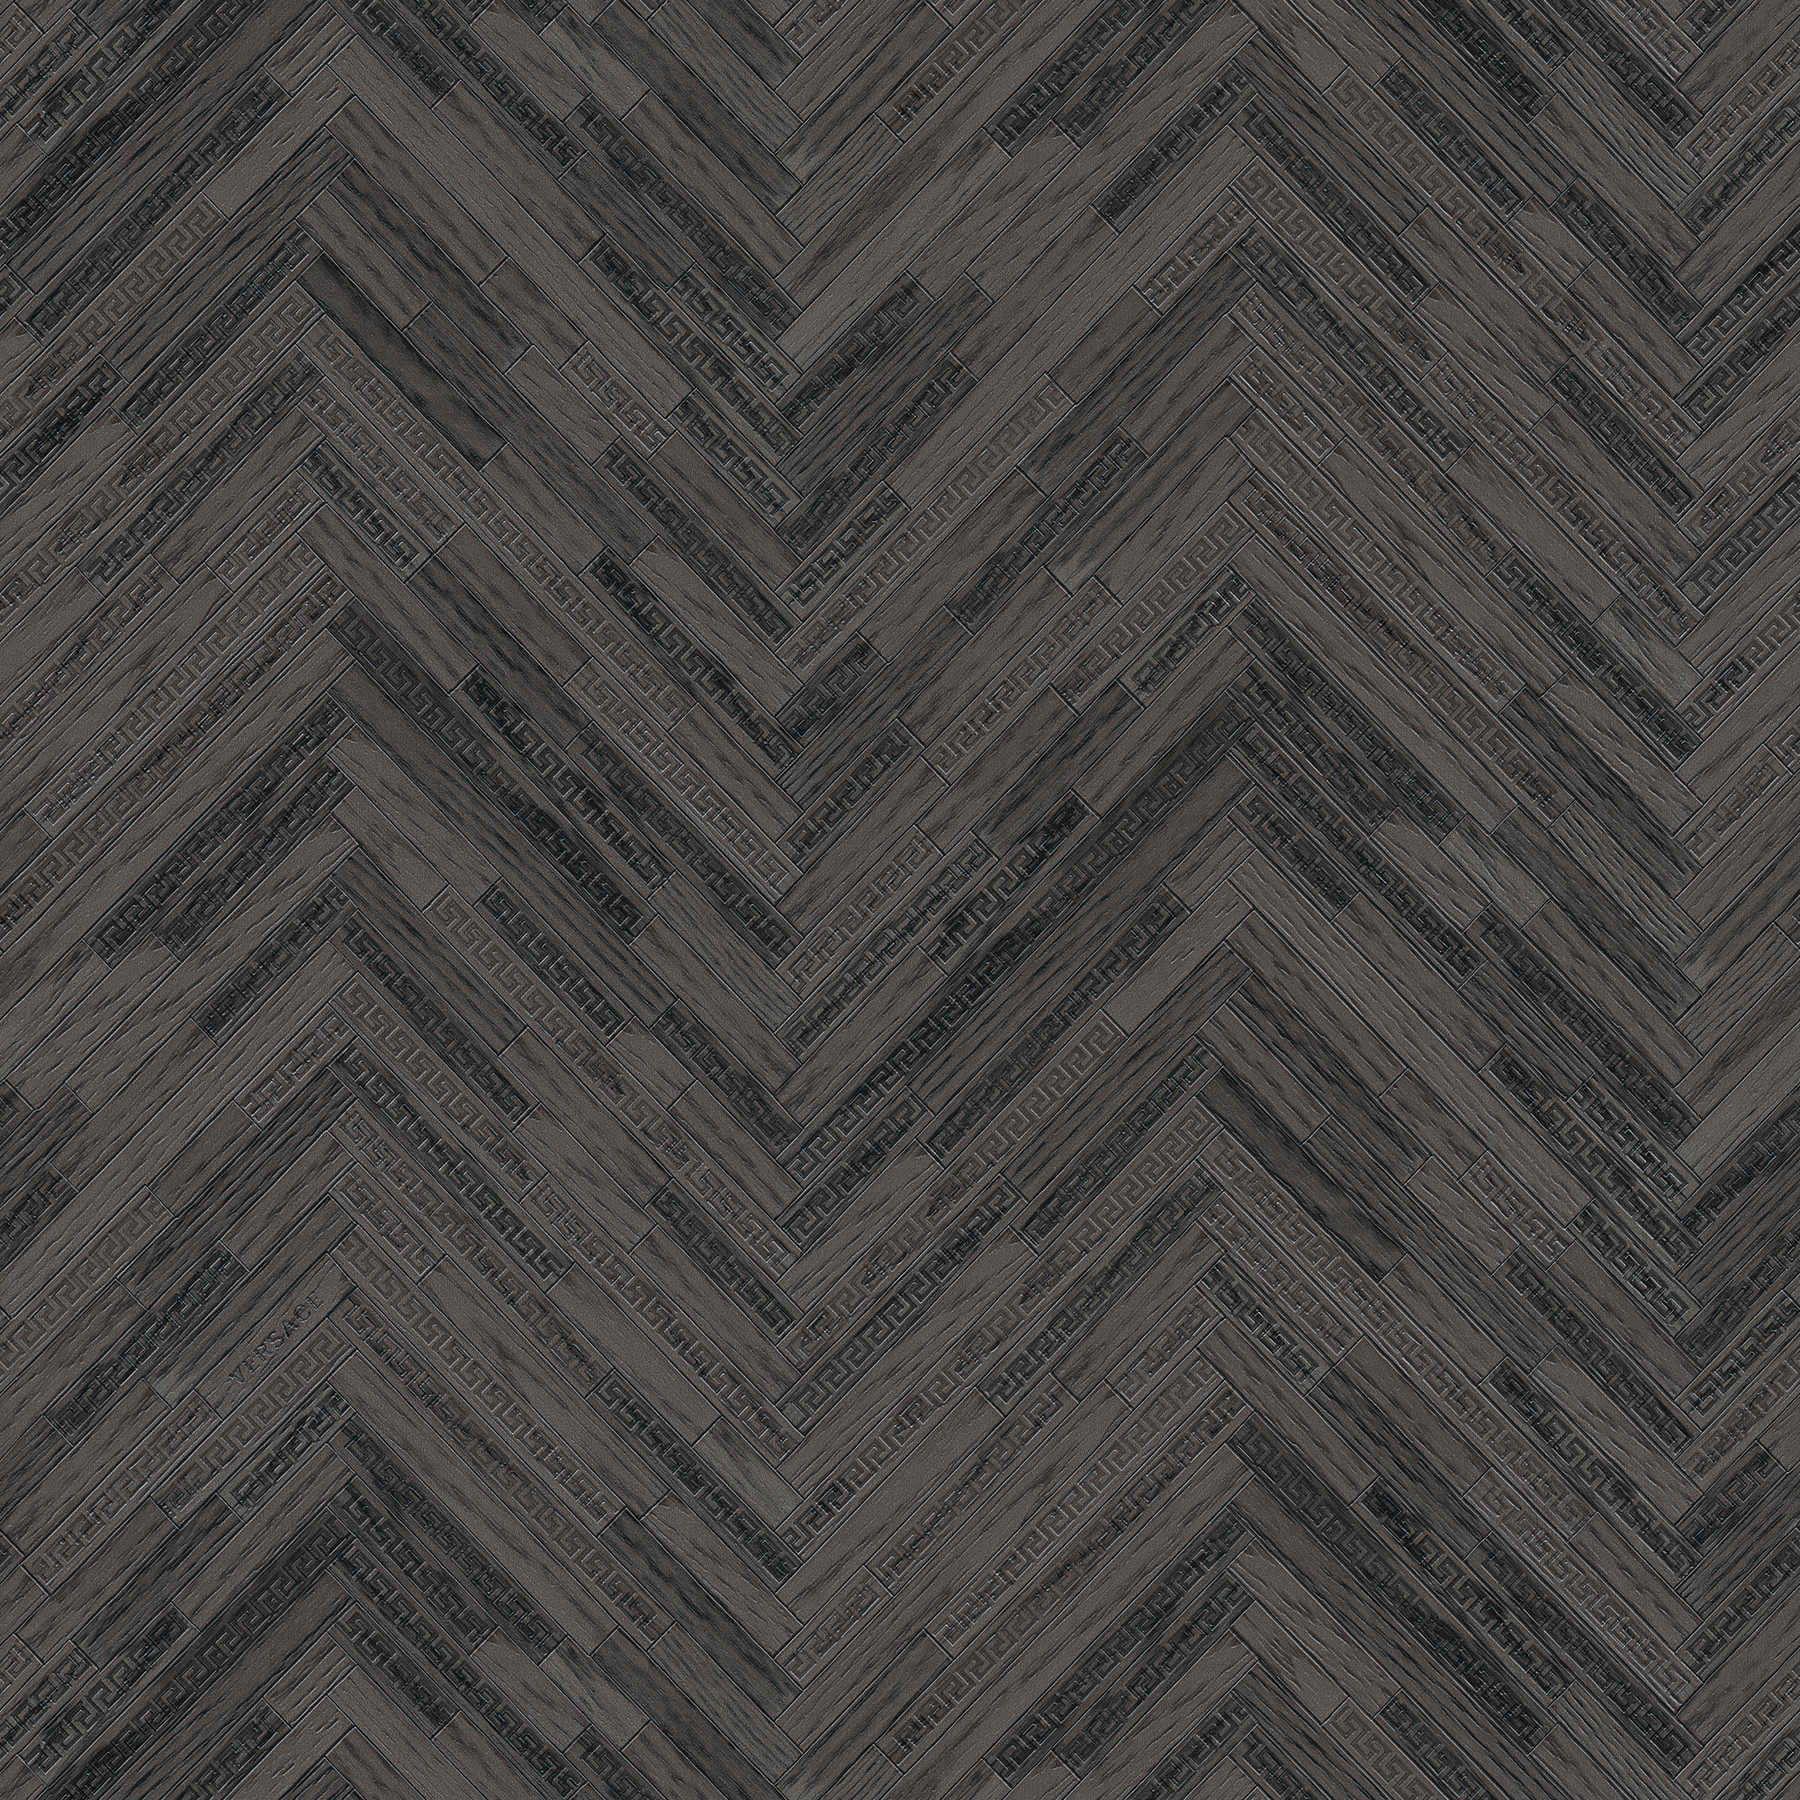 VERSACE Home Papier peint aspect bois élégant - gris, noir
